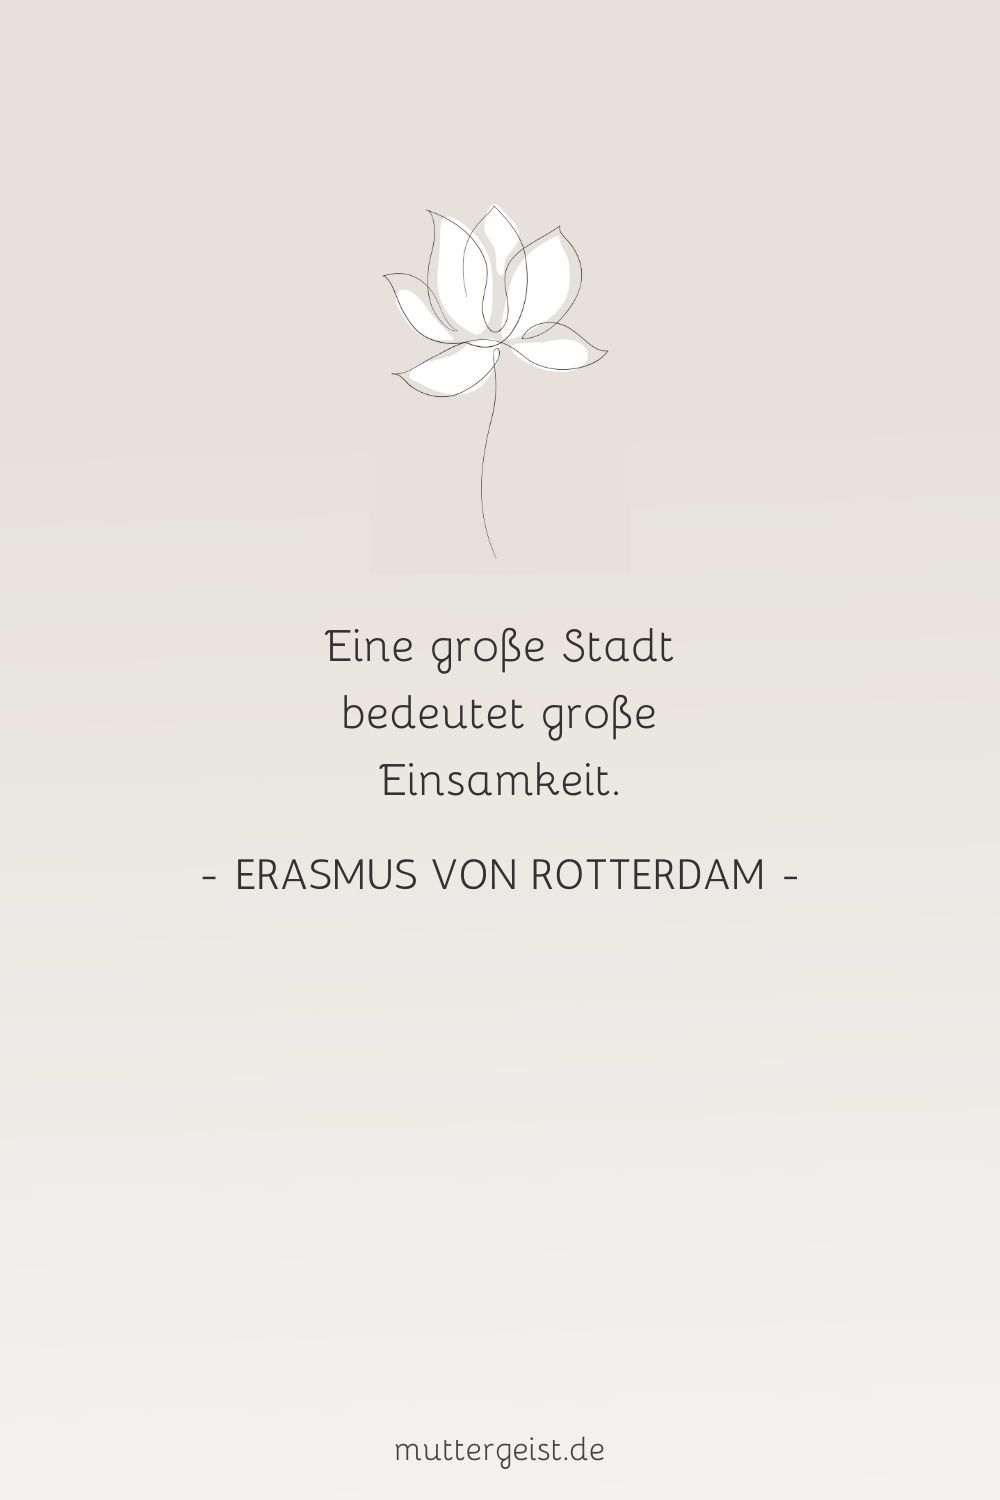 Zitat von Erasmus von Rotterdam über die Einsamkeit in einer großen Stadt